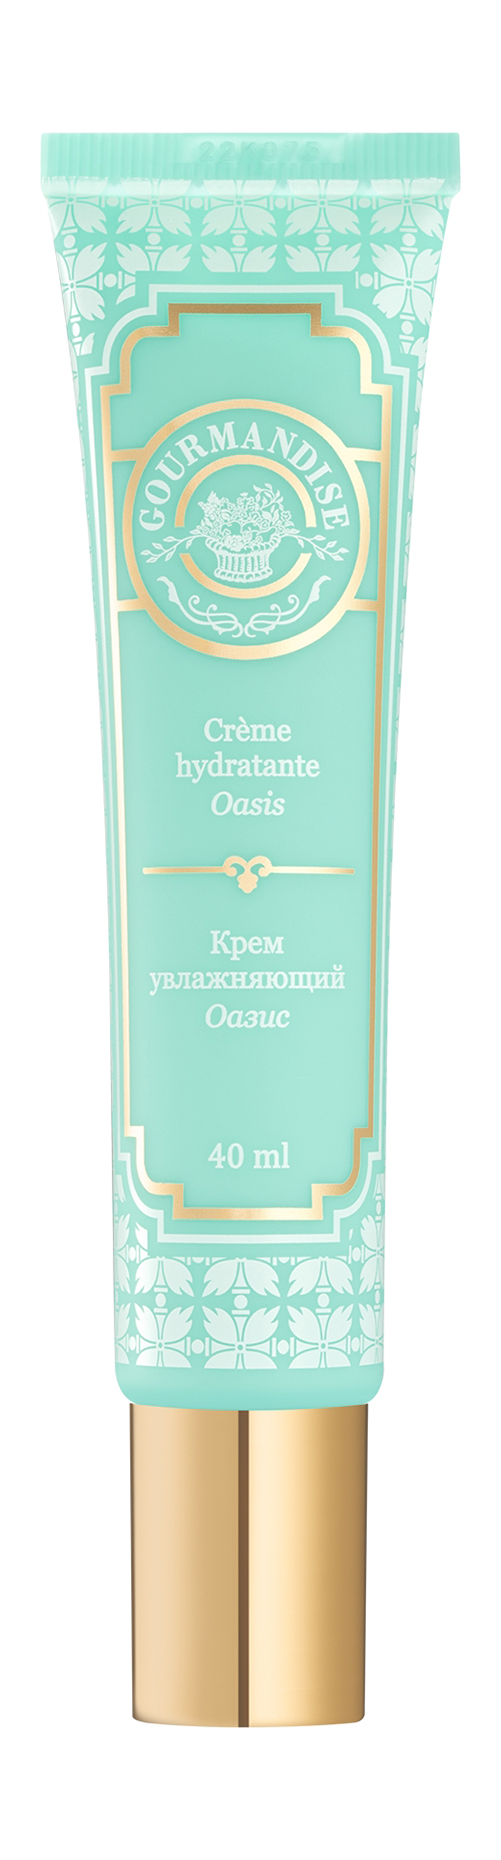 Увлажняющий крем для лица с полисахаридами Gourmandise Oasis Creme Hydratante